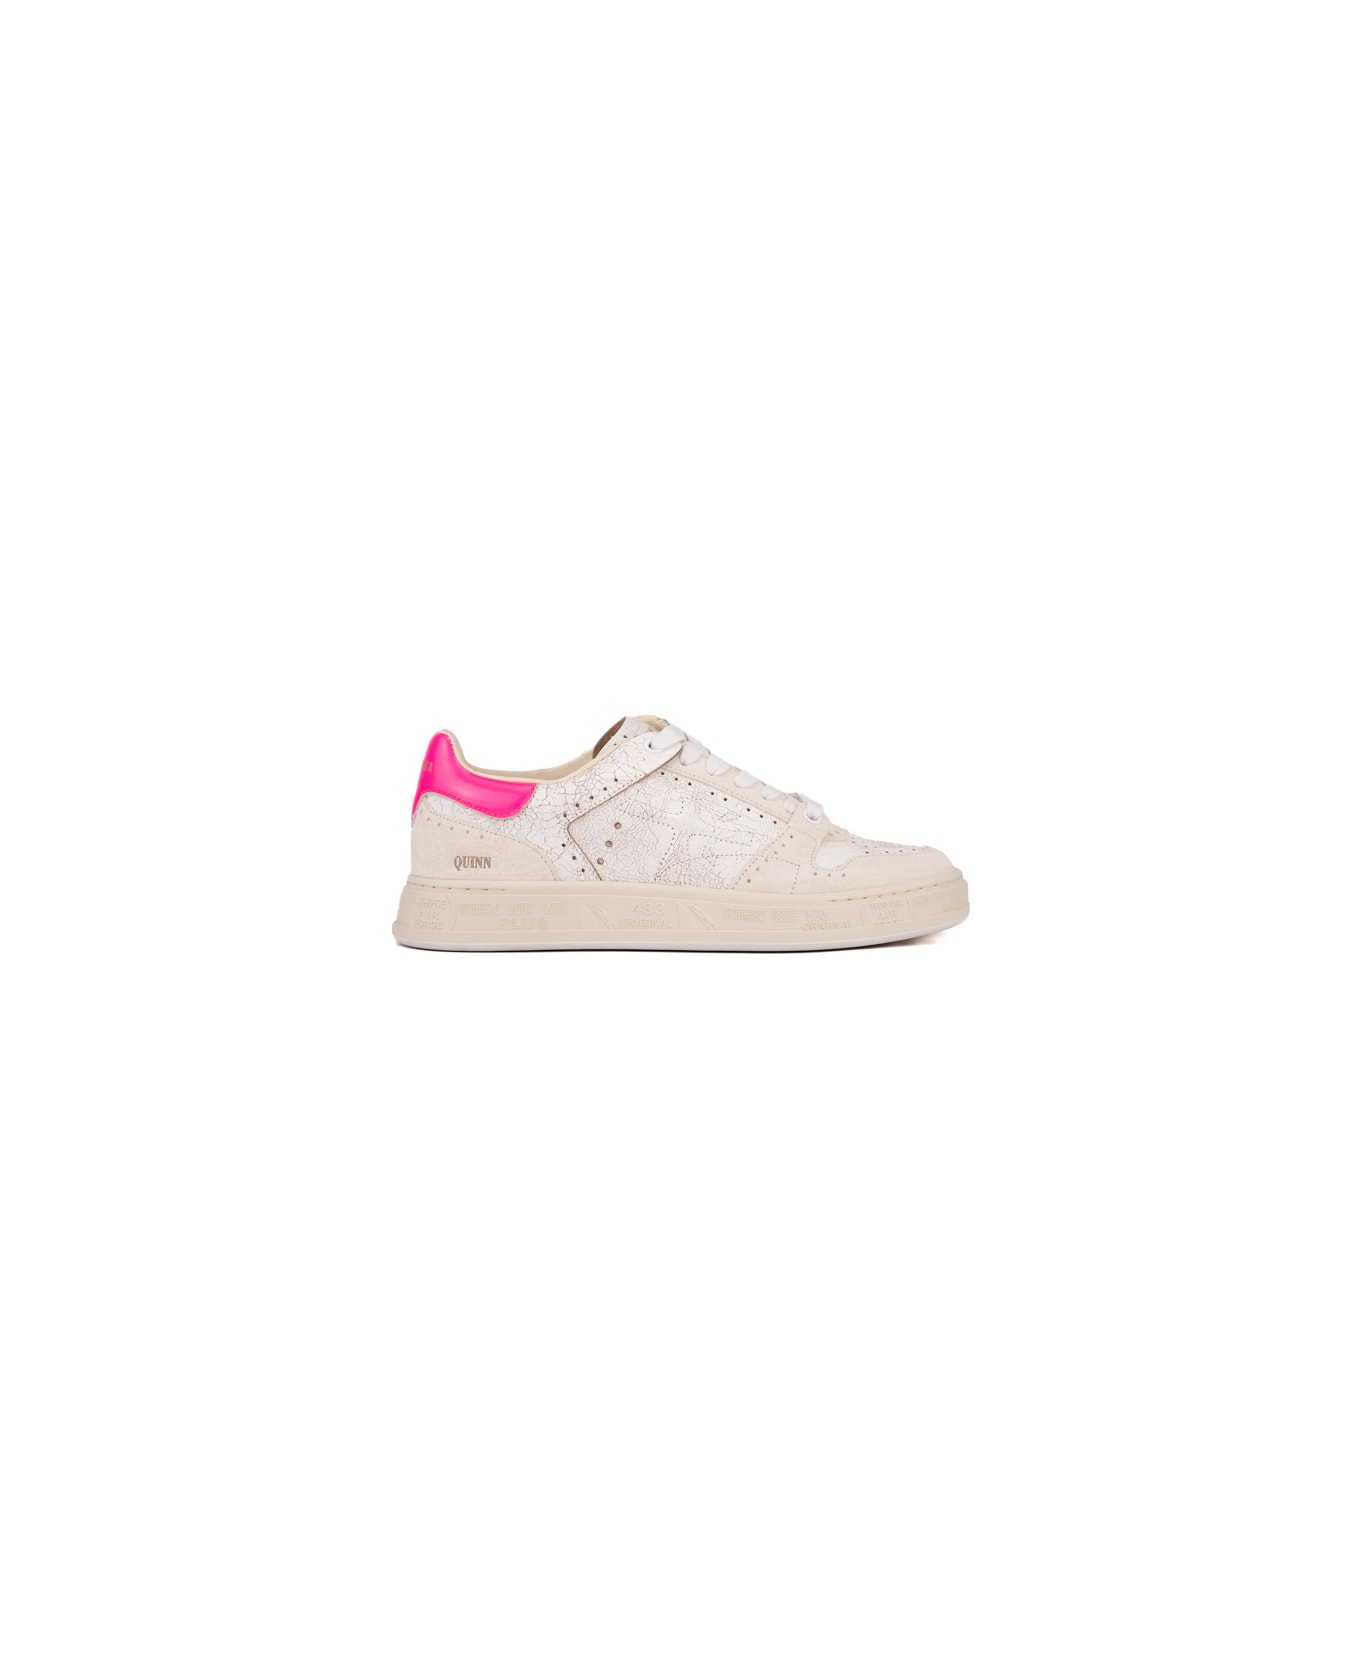 Premiata Quinnd Sneakers - White